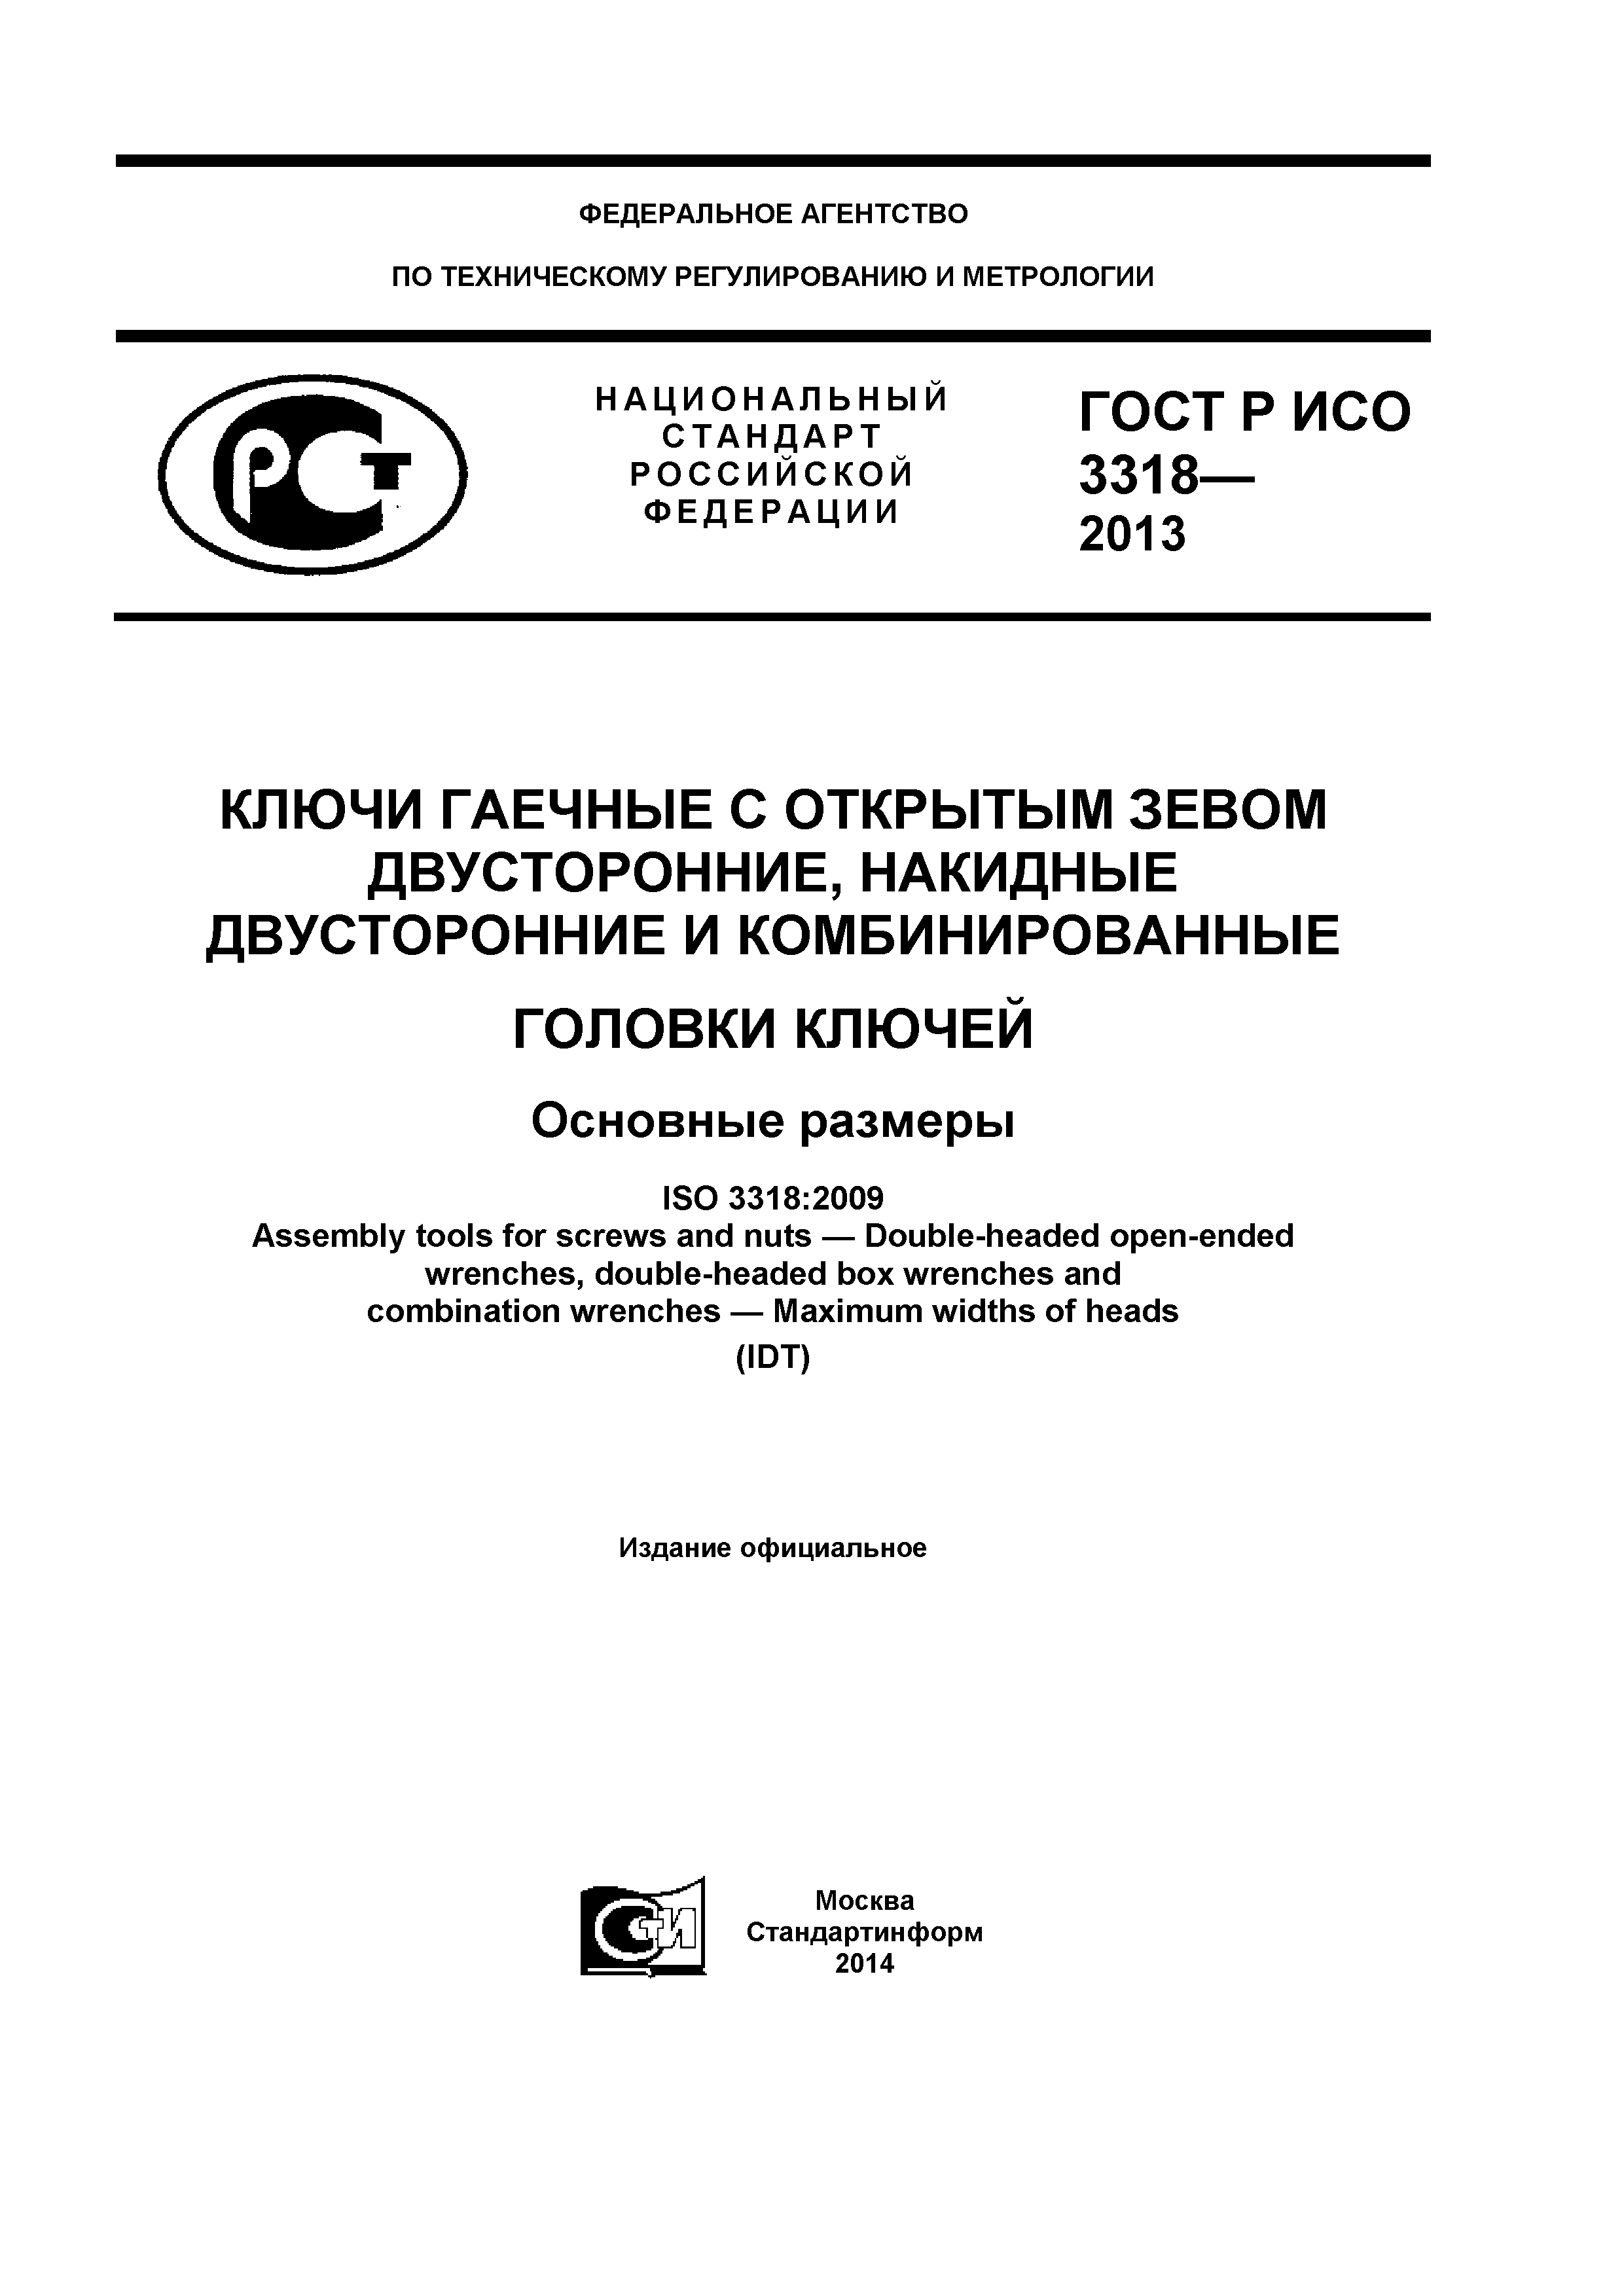 ГОСТ Р ИСО 3318-2013